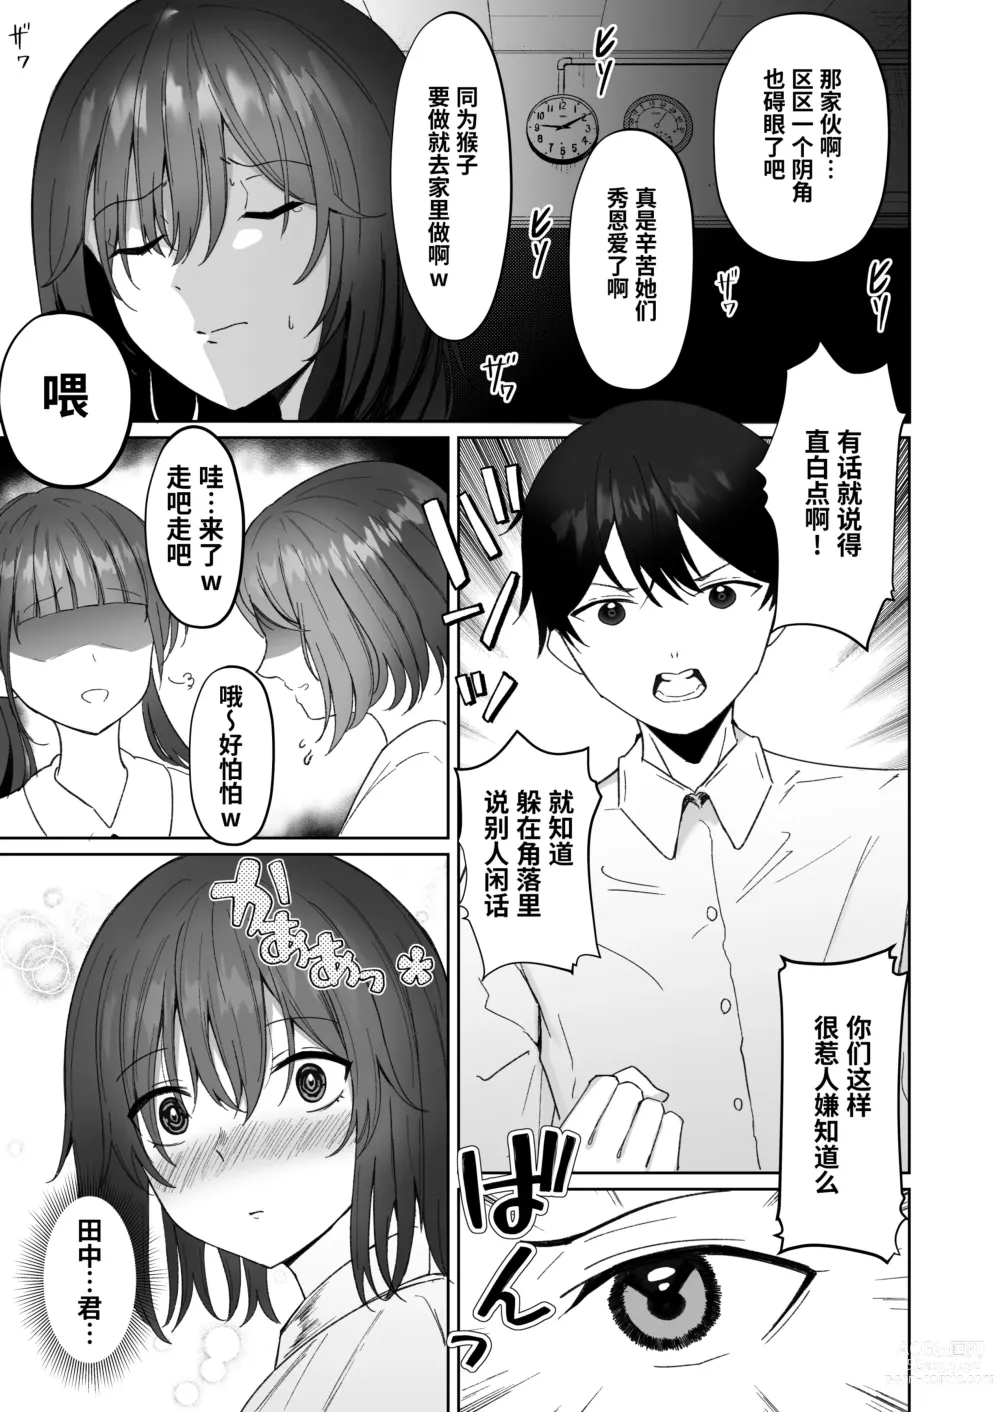 Page 6 of doujinshi Netorare ~Kurokami Musume no Junan~